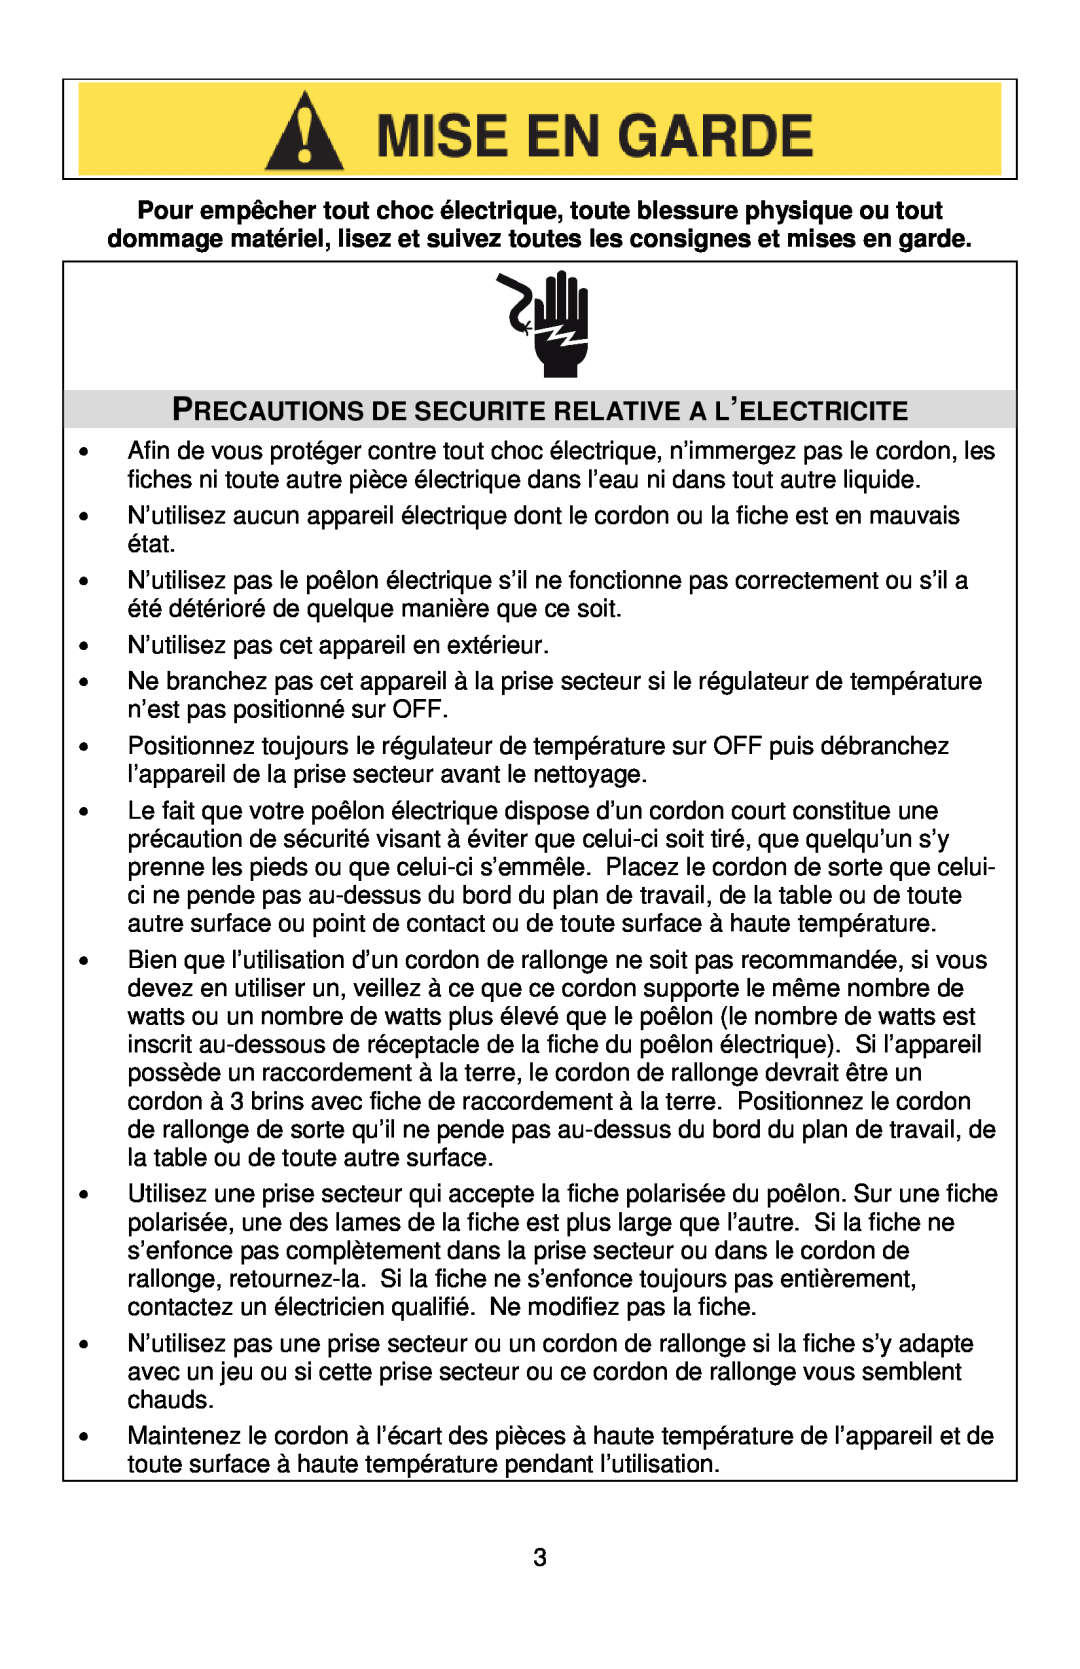 West Bend L5571D instruction manual Precautions De Securite Relative A L’Electricite 